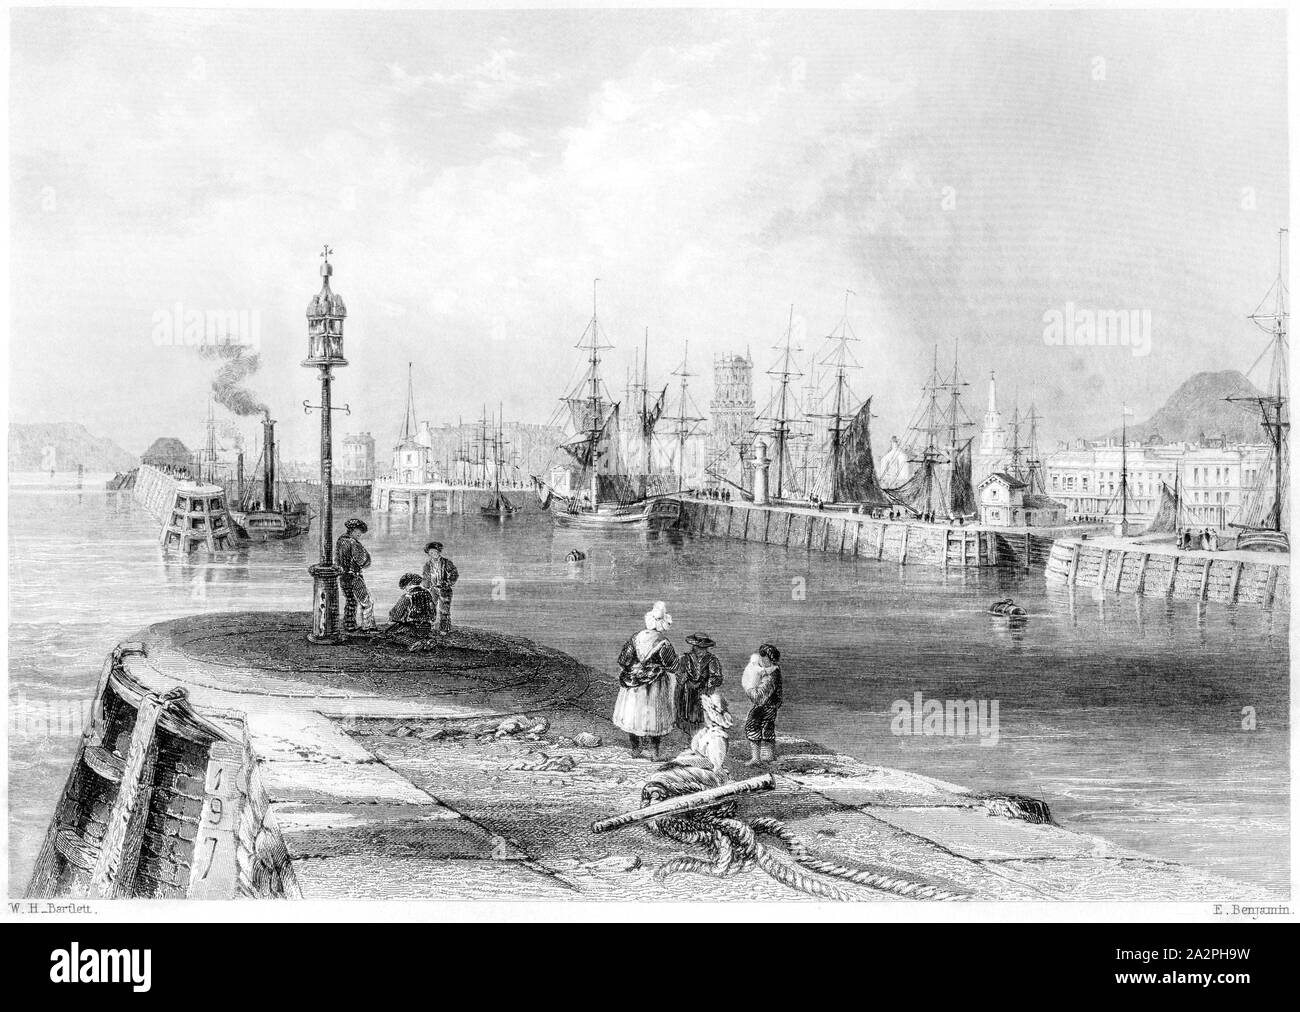 Une gravure de l'entrée du port de Dundee numérisées à haute résolution à partir d'un livre imprimé en 1842. Croyait libres de droit. Banque D'Images